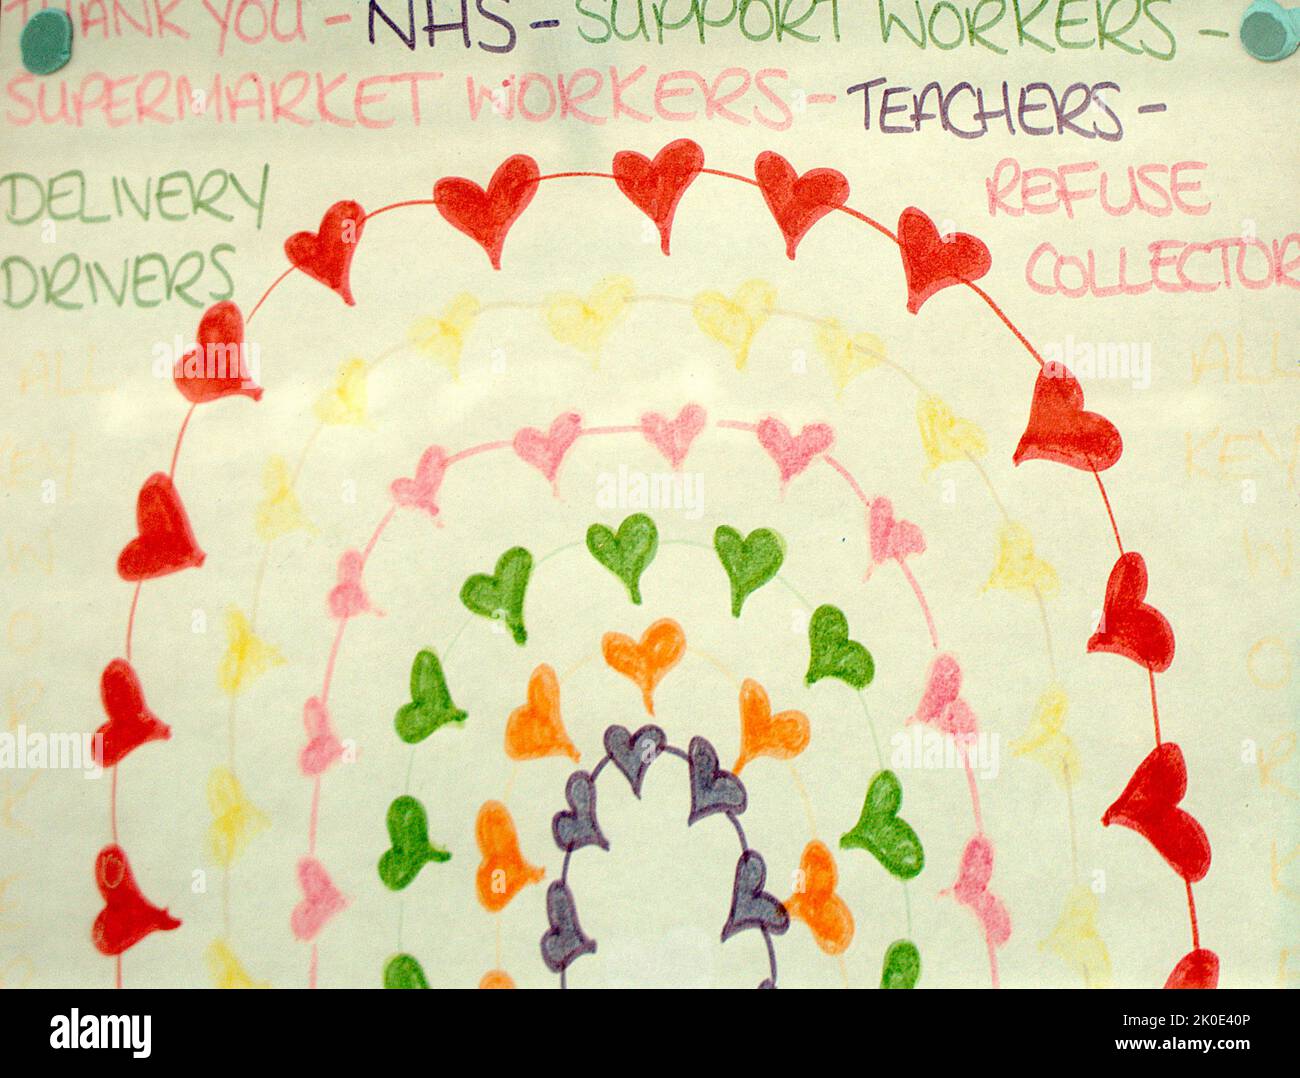 Merci les dessins du NHS par des enfants en soutien aux travailleurs de la santé, à Bournemouth, pendant la pandémie du coronavirus (Covid-19). 8th juin 2020. Banque D'Images